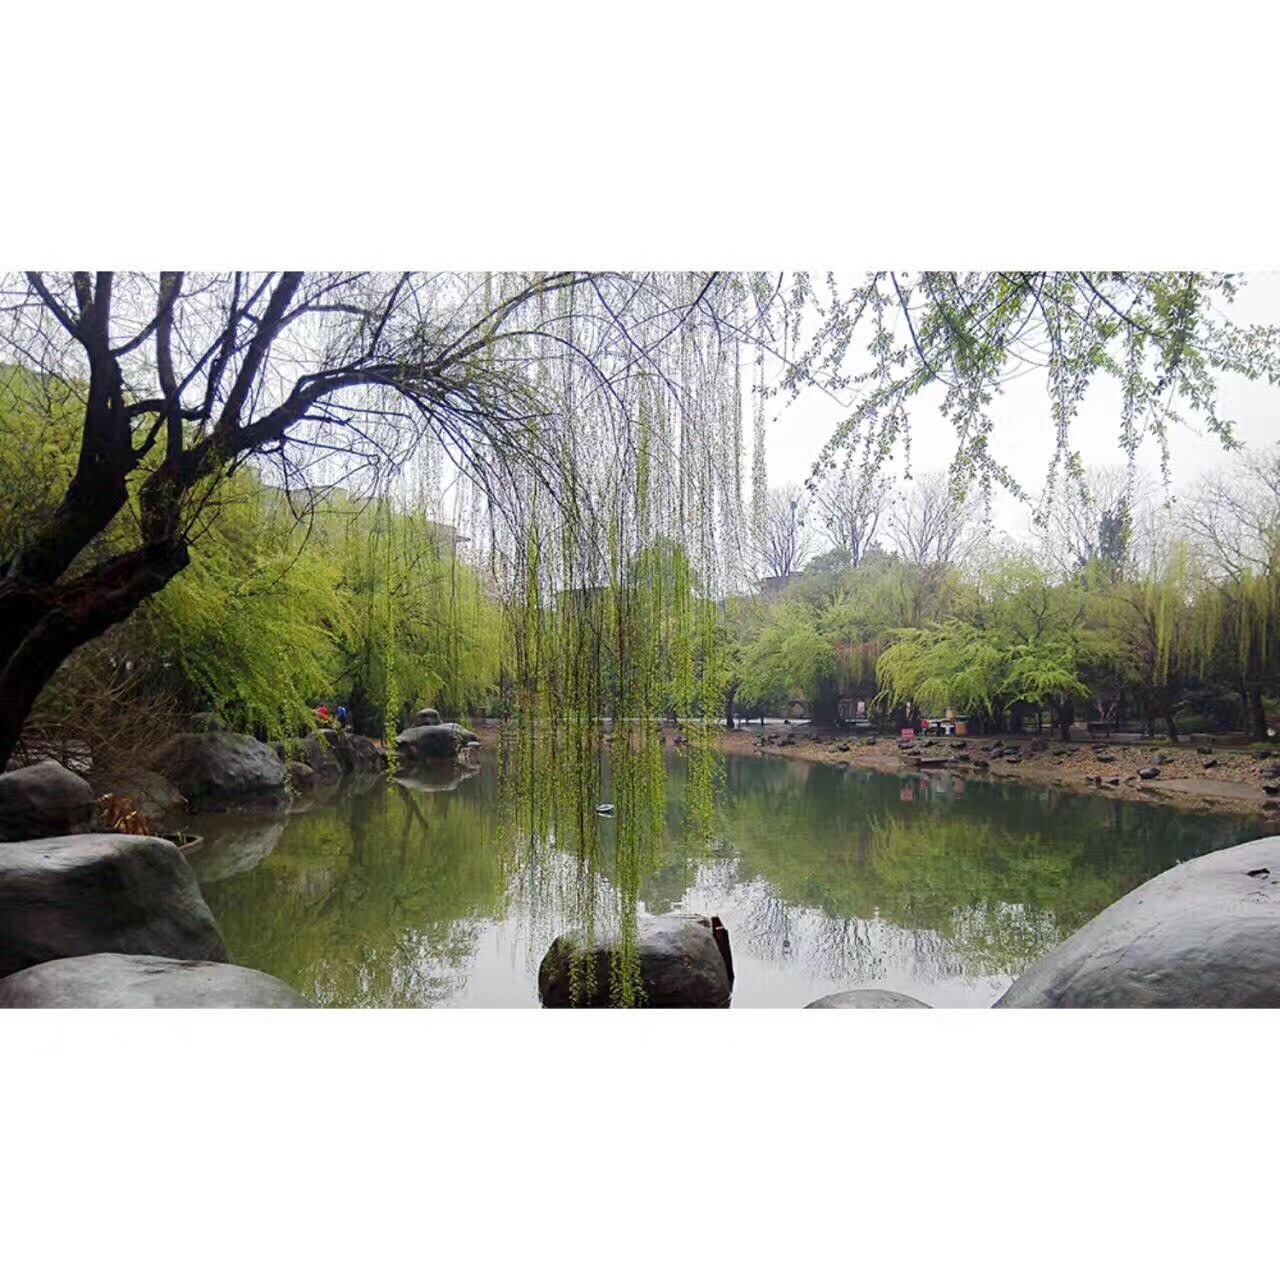 长沙桂花公园图片